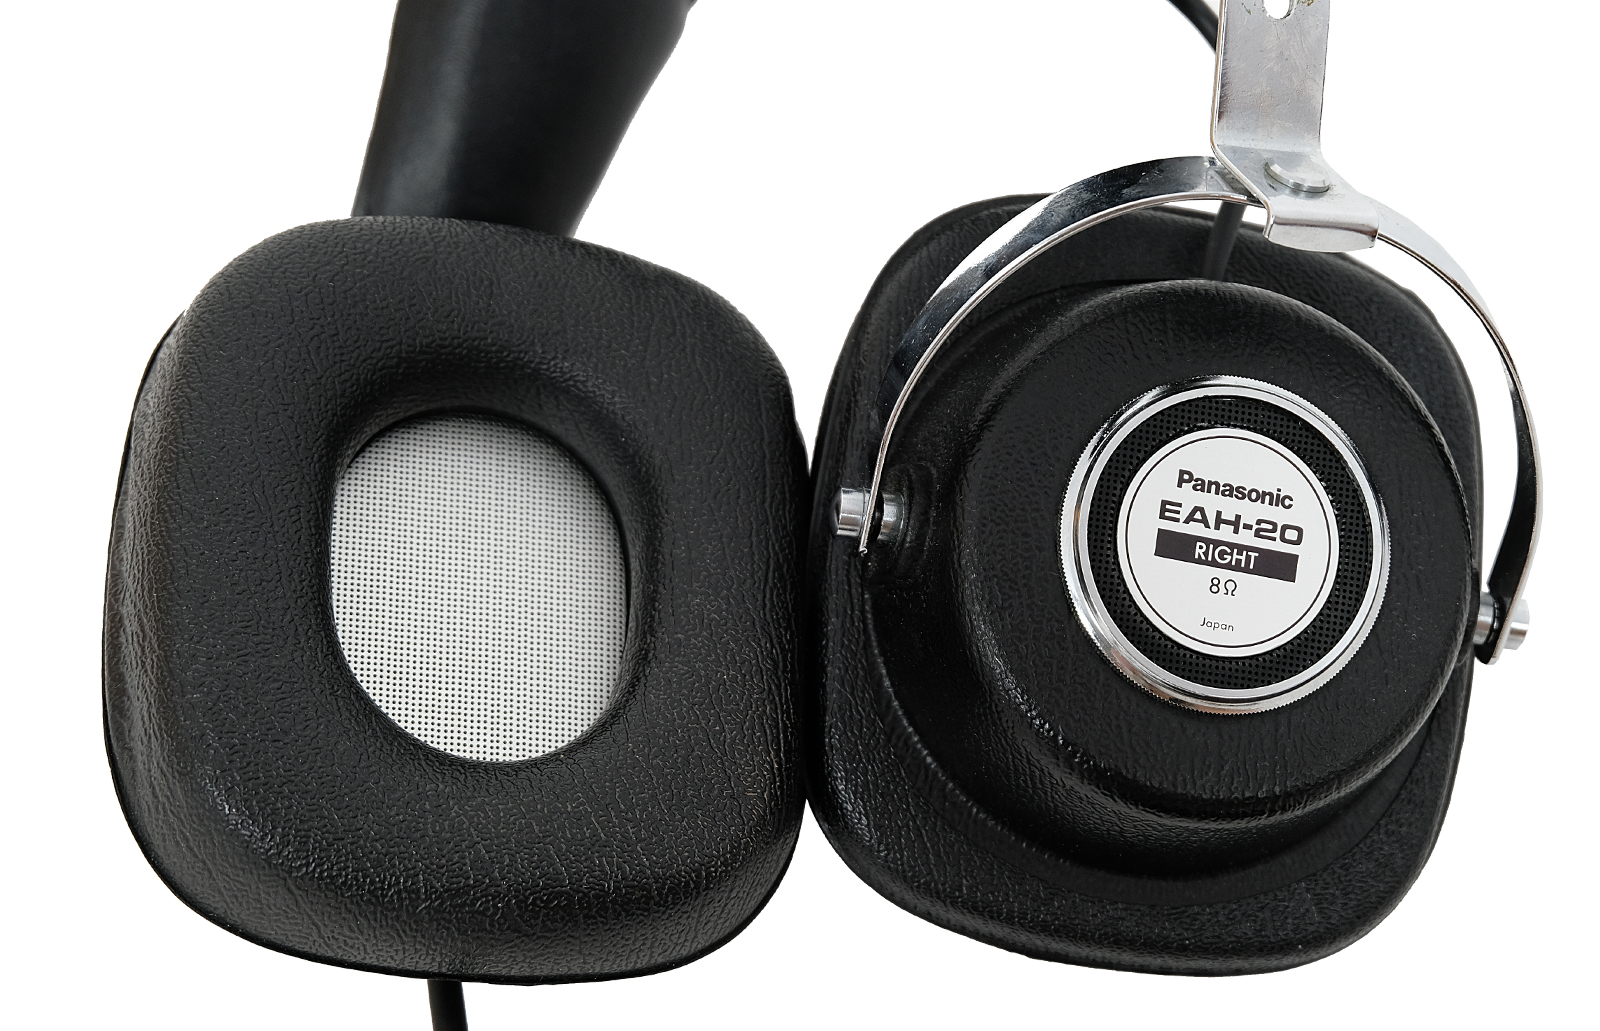 Panasonic EAH-20 headphones